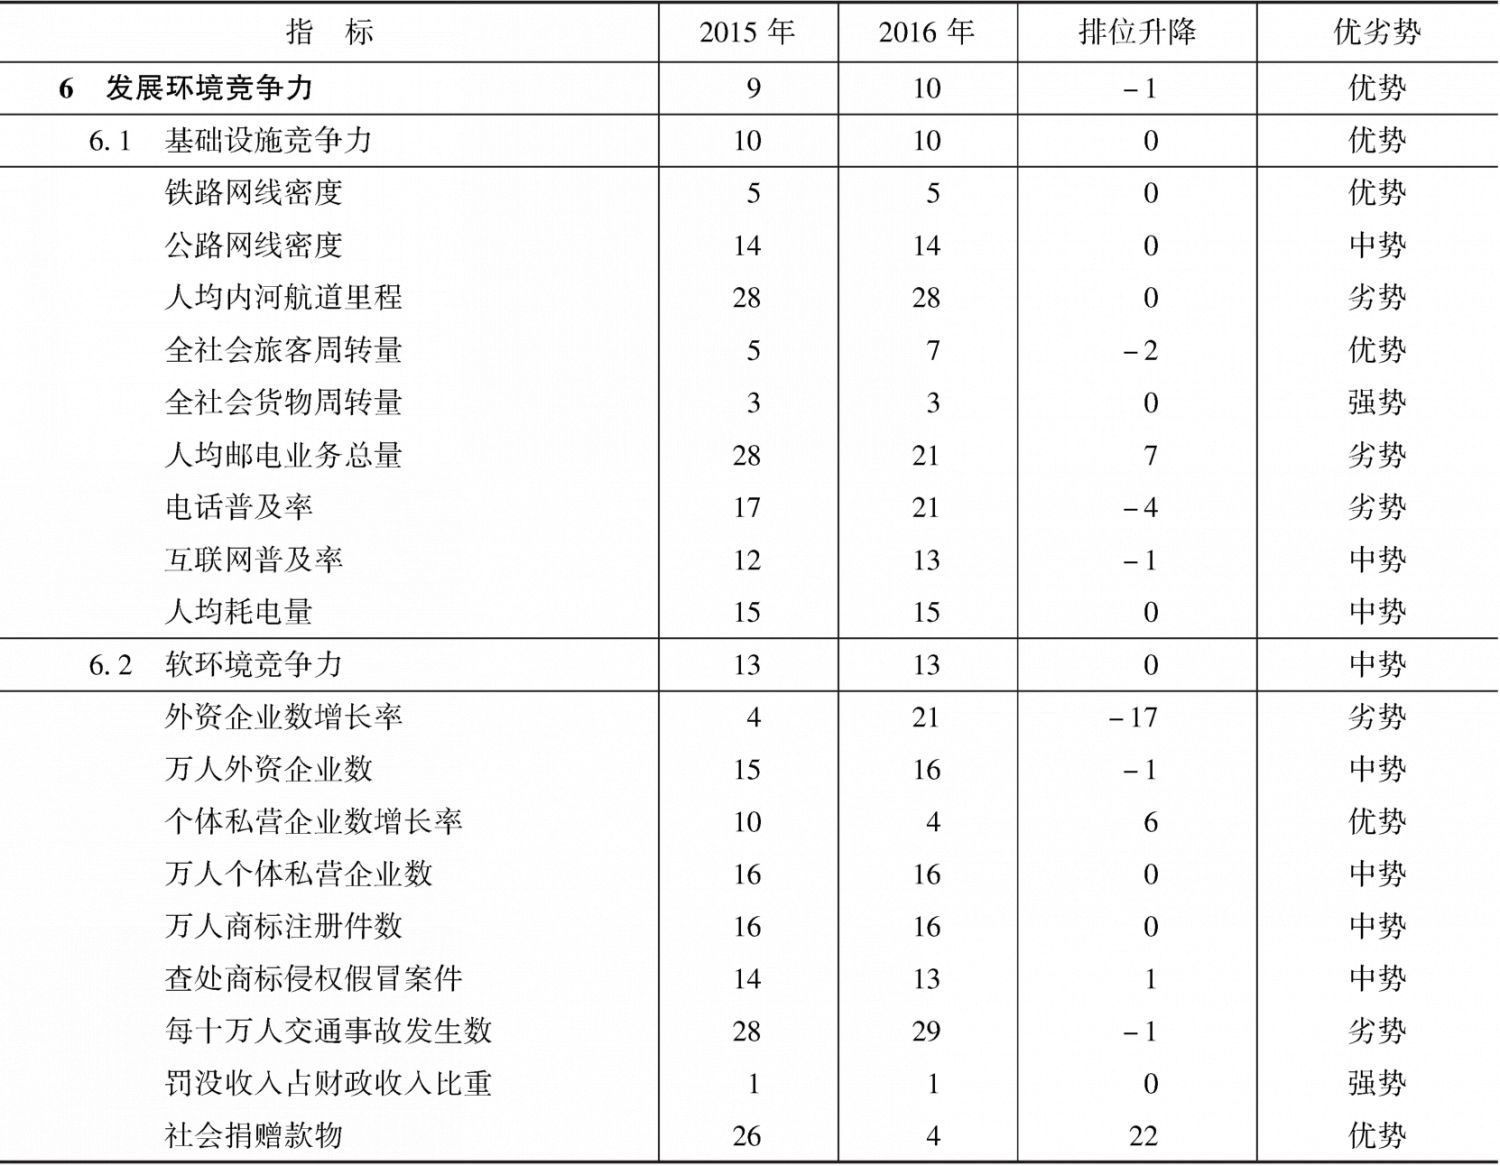 表3-10 2015～2016年河北省发展环境竞争力指标组排位及变化趋势